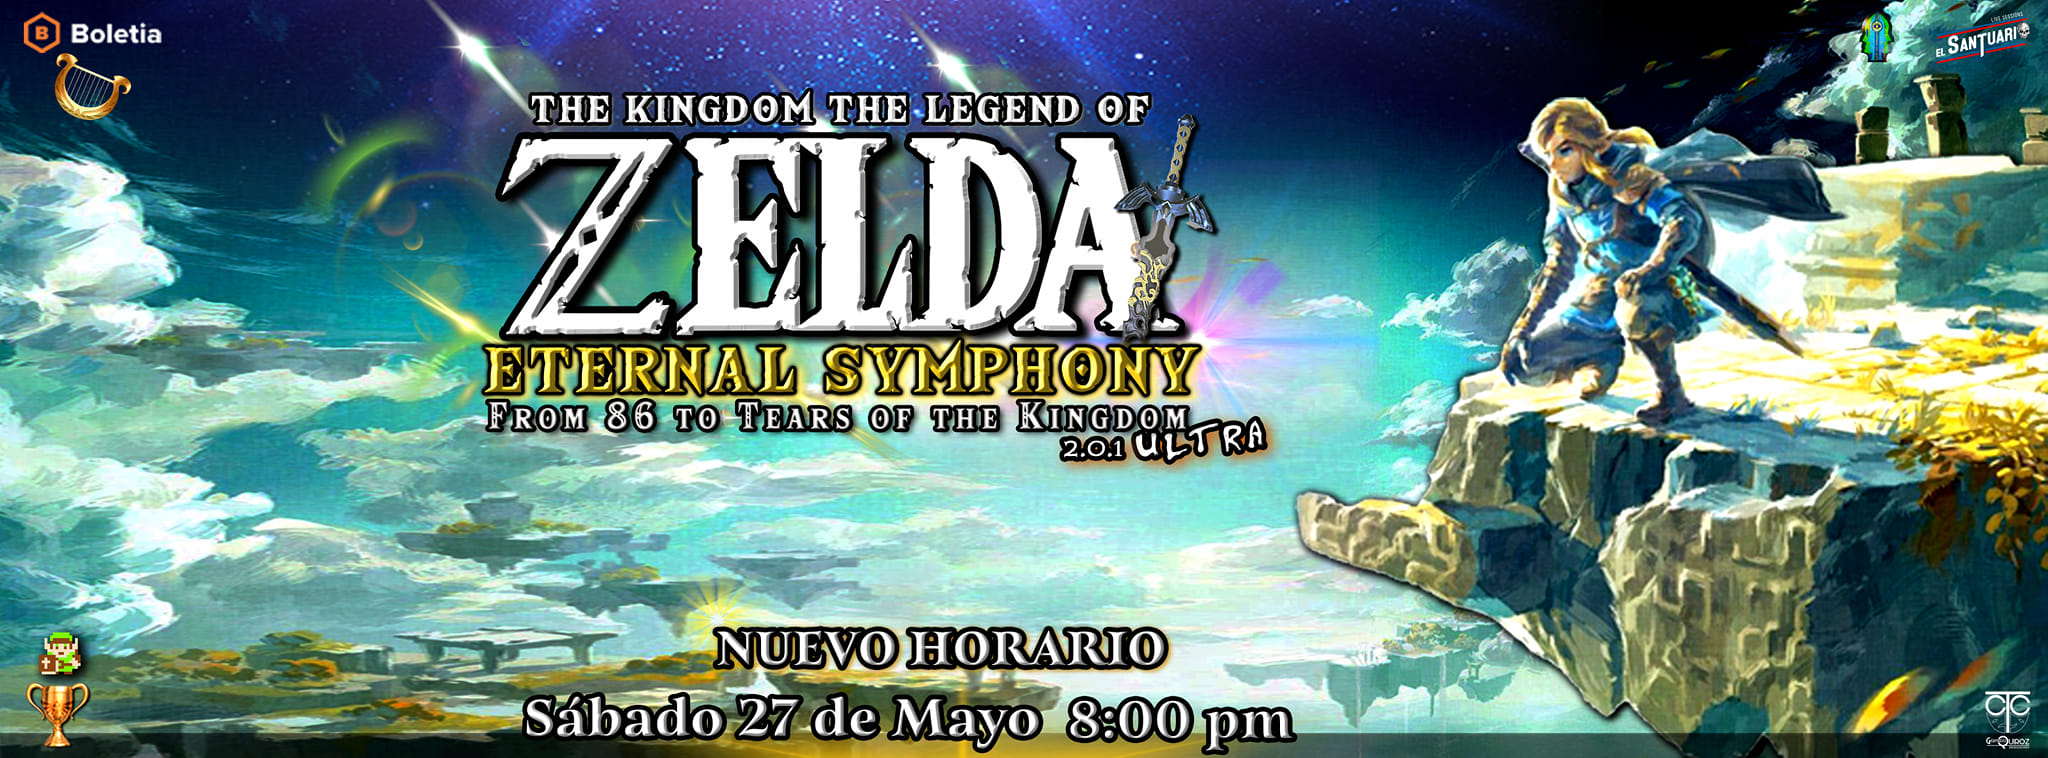 Concierto orquestal de The Legend of Zelda en CDMX: Torneo, Rifa y Cosplay